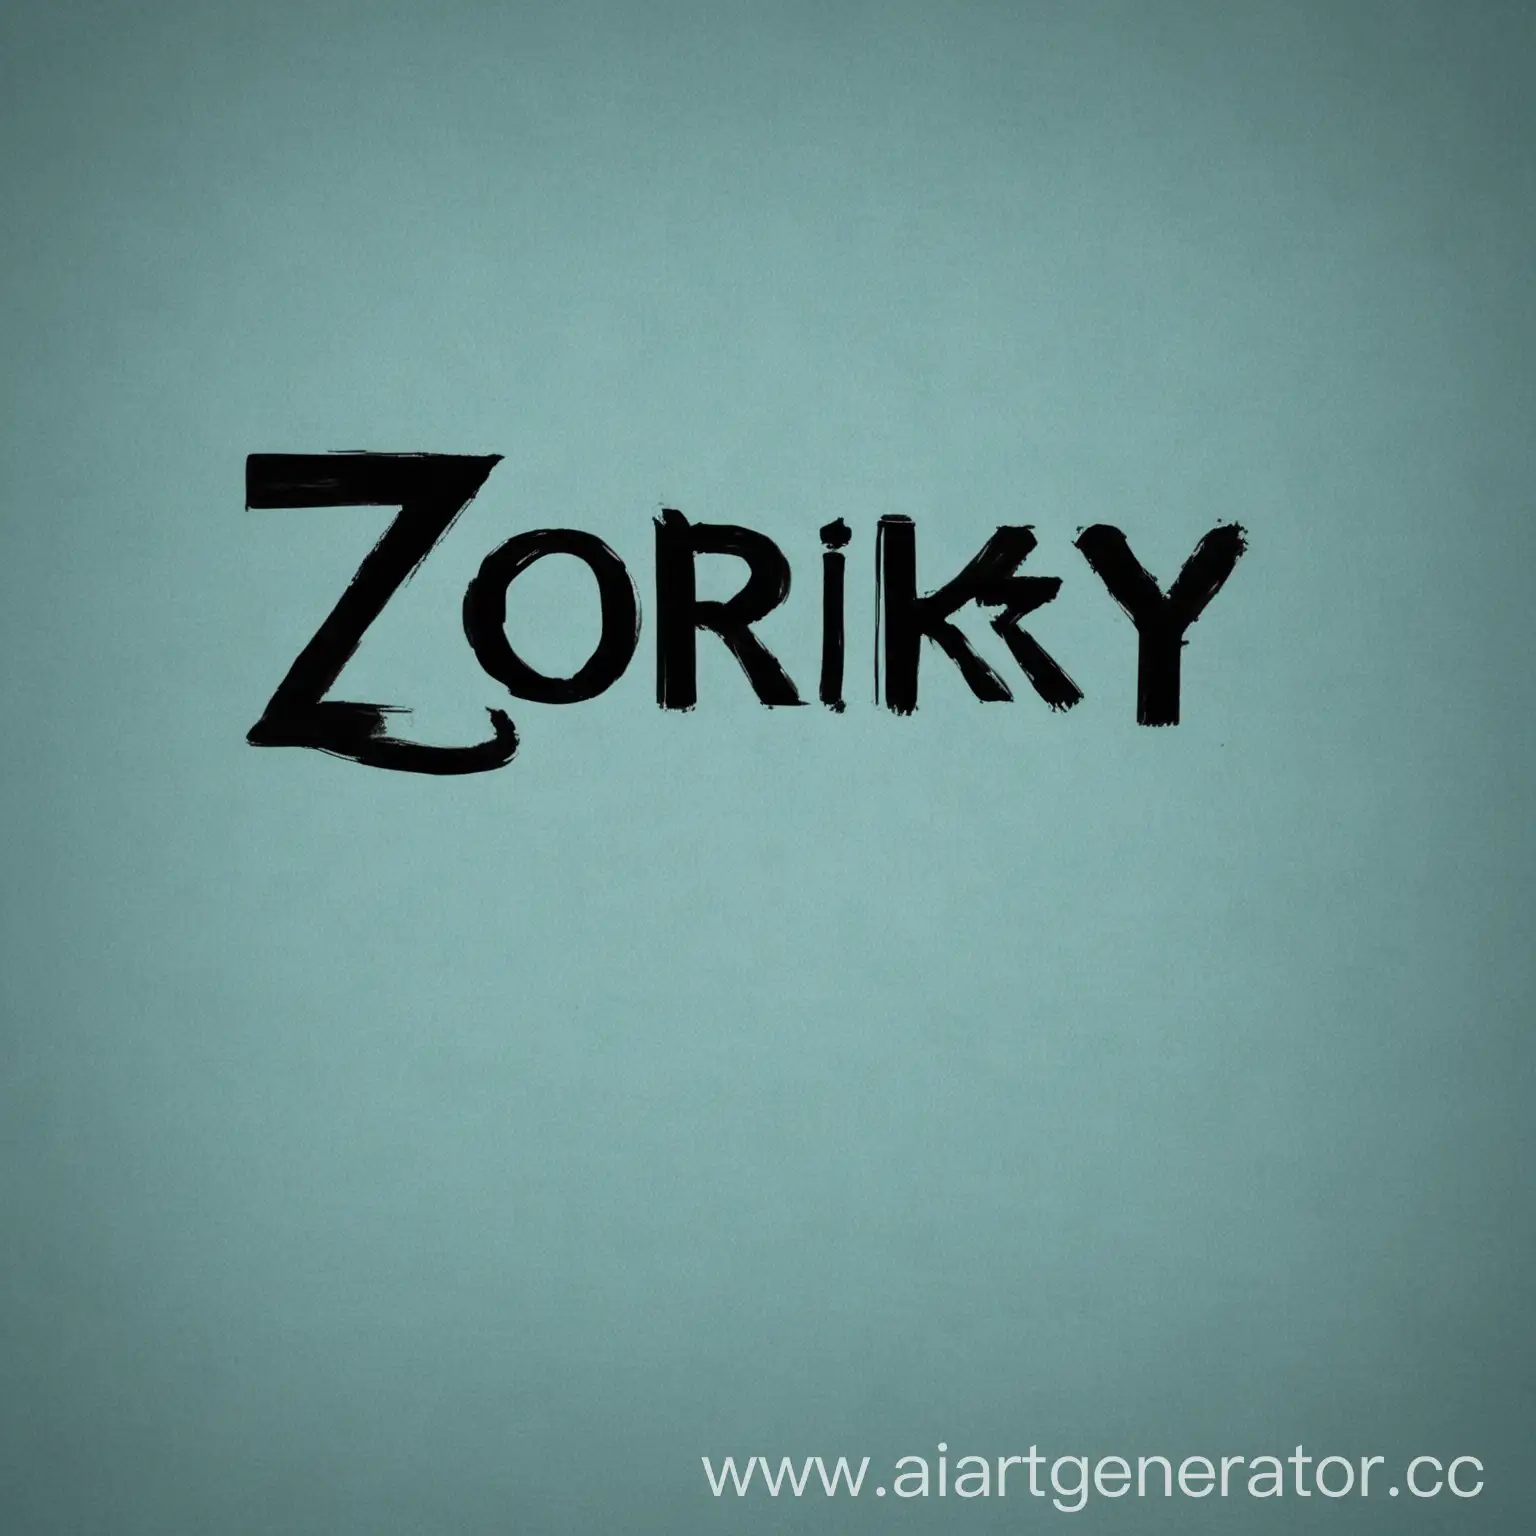 На синем фоне, чёрная надпись "Zorkiy" а внизу, маленькая, чёрная надпись "The creator"